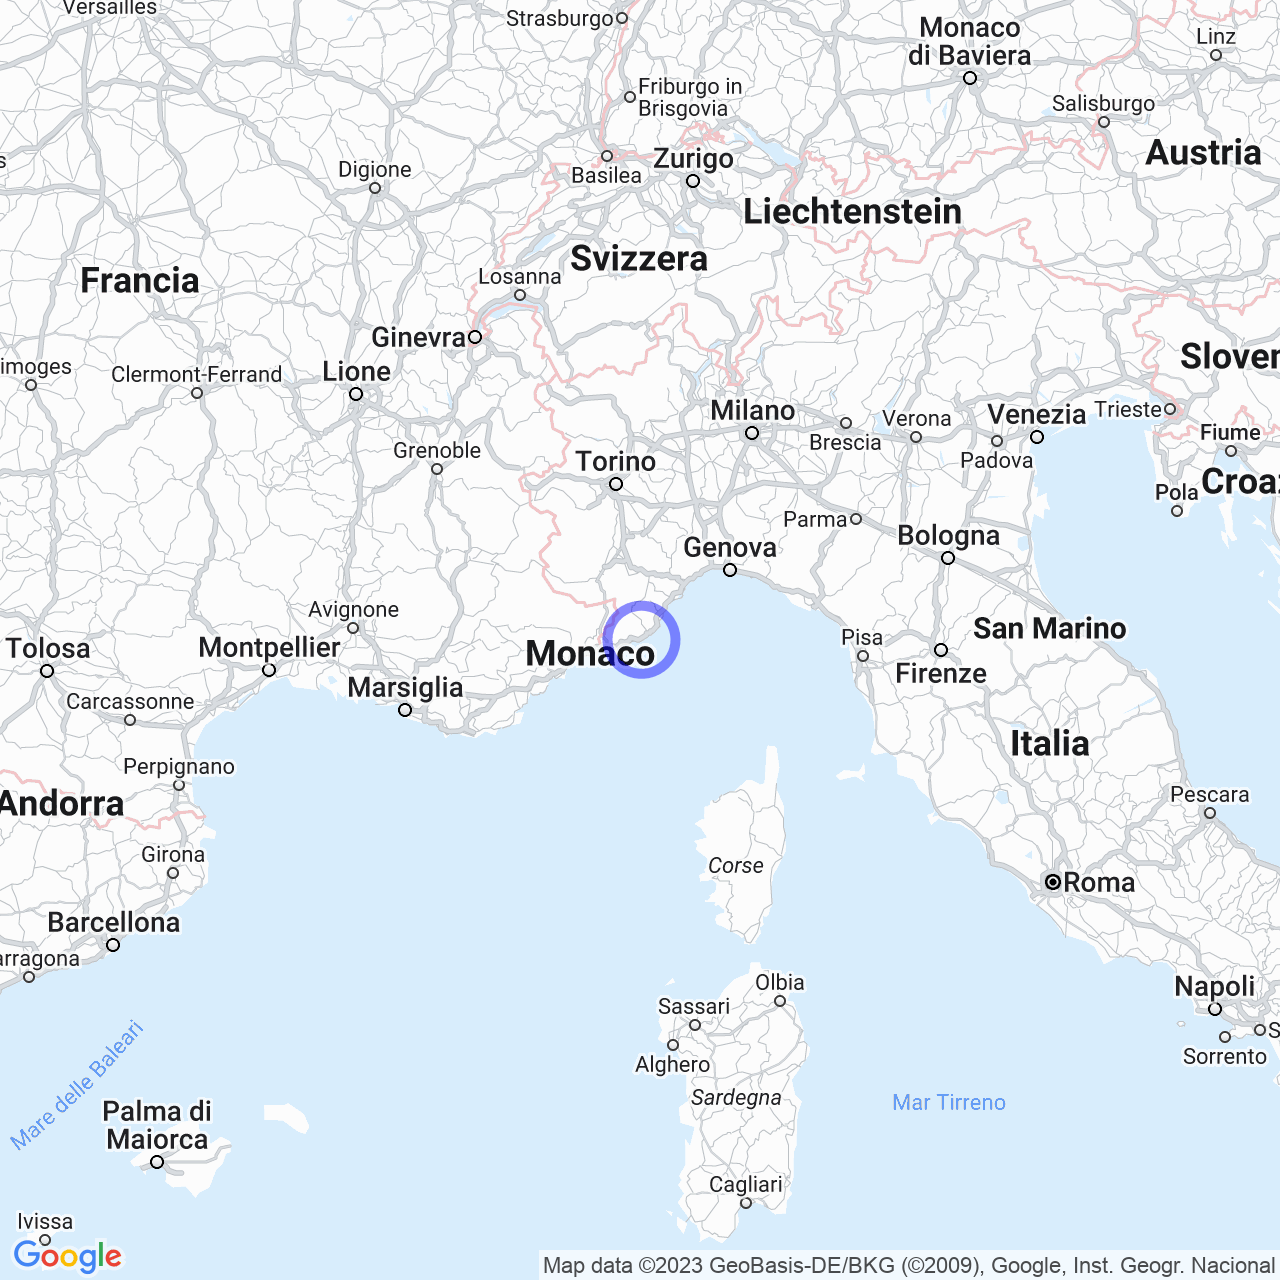 San Lorenzo al Mare: a small coastal village in Liguria.